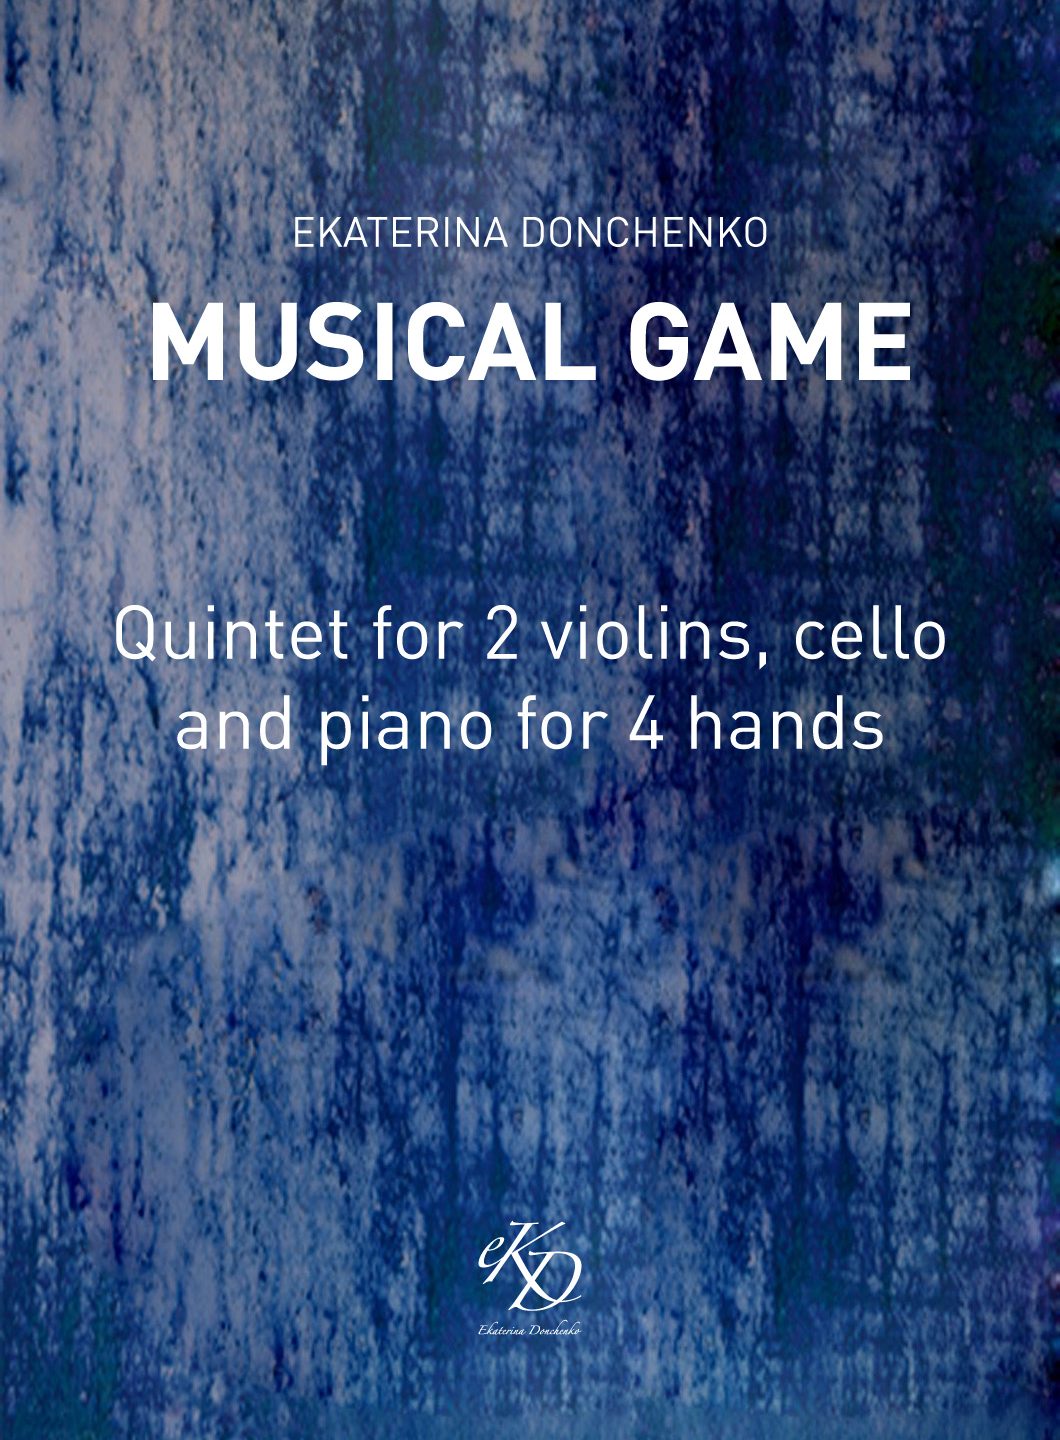 MUSICAL GAME – QUINTET